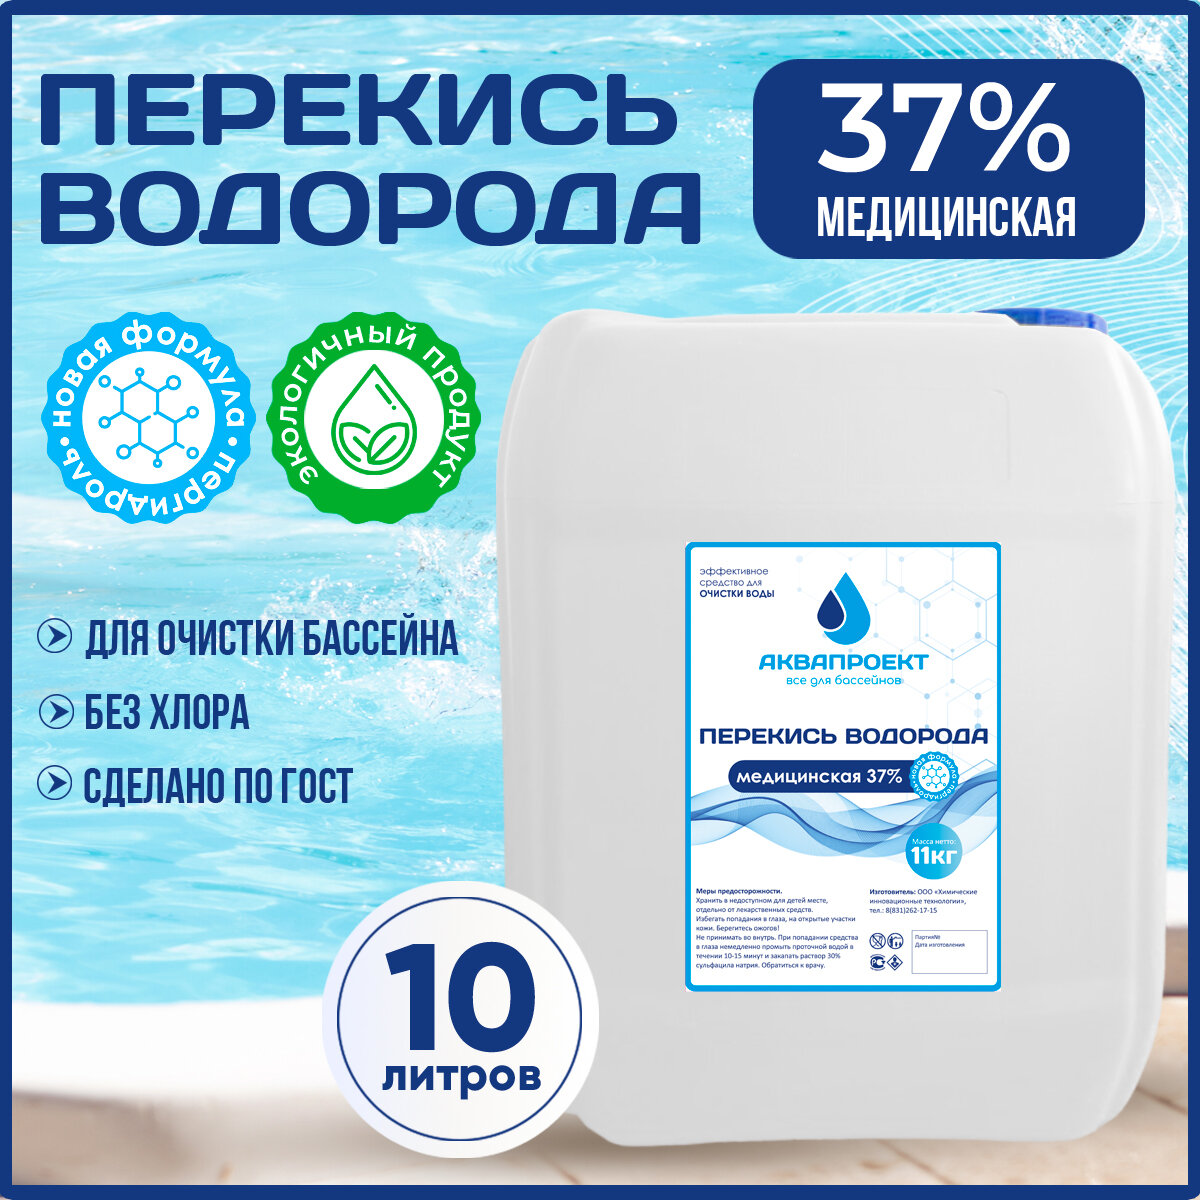 Перекись водорода медицинская для бассейна, канистра 10 литров / Пероксид 37% для очистки воды / Химия от цветения, водорослей и плесени